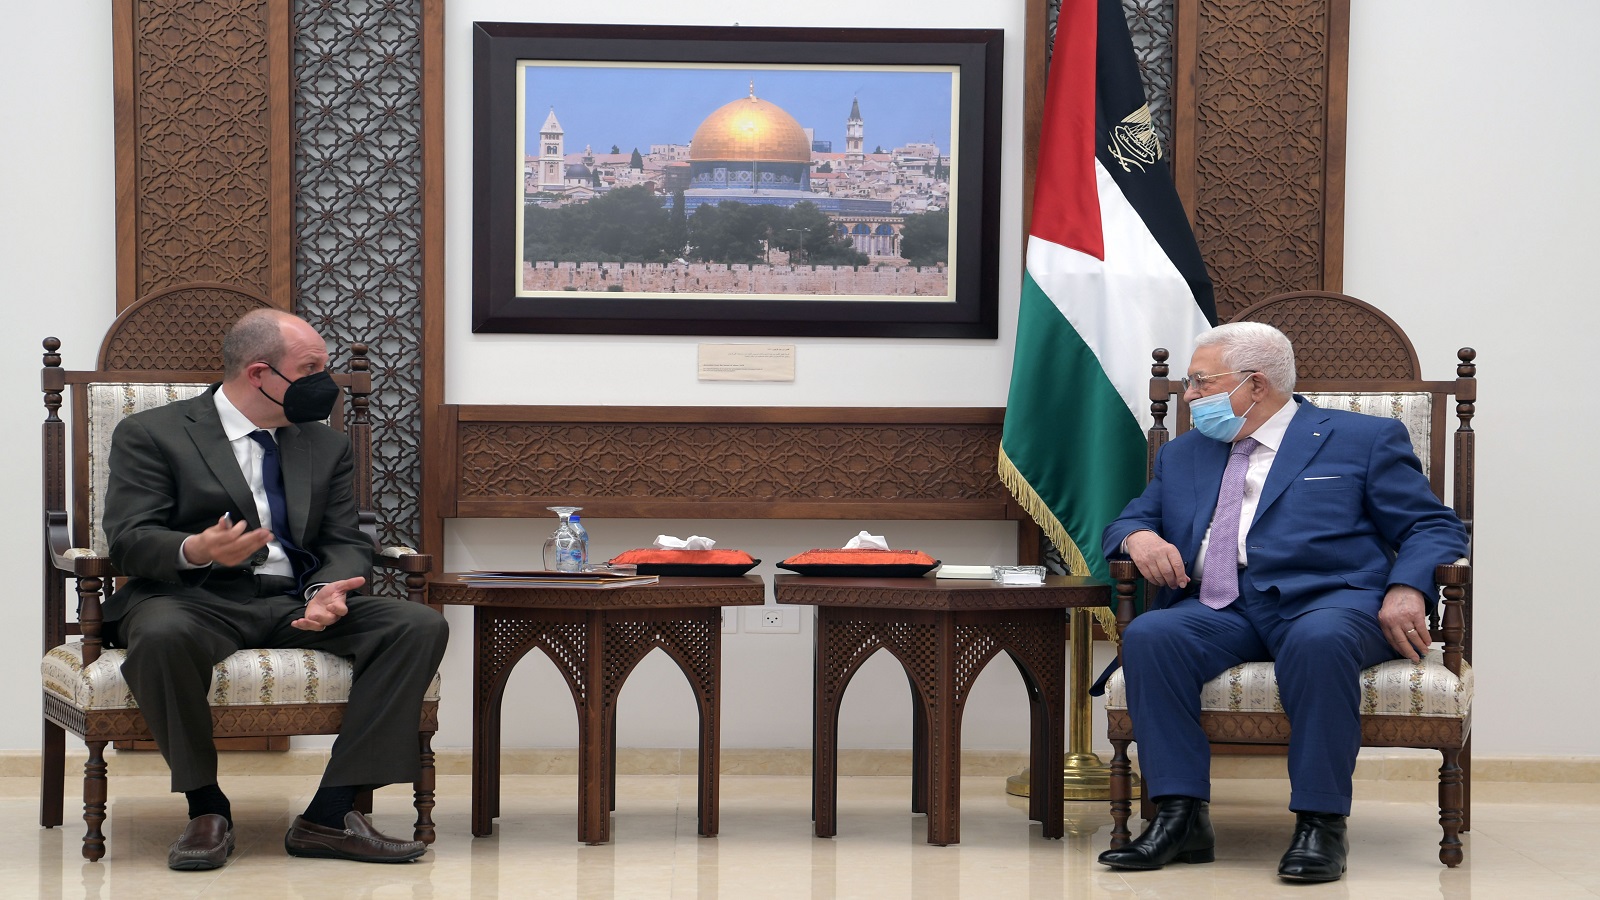 السلطة غاضبة من اجتماع المبعوث الاميركي بنشطاء فلسطينيين